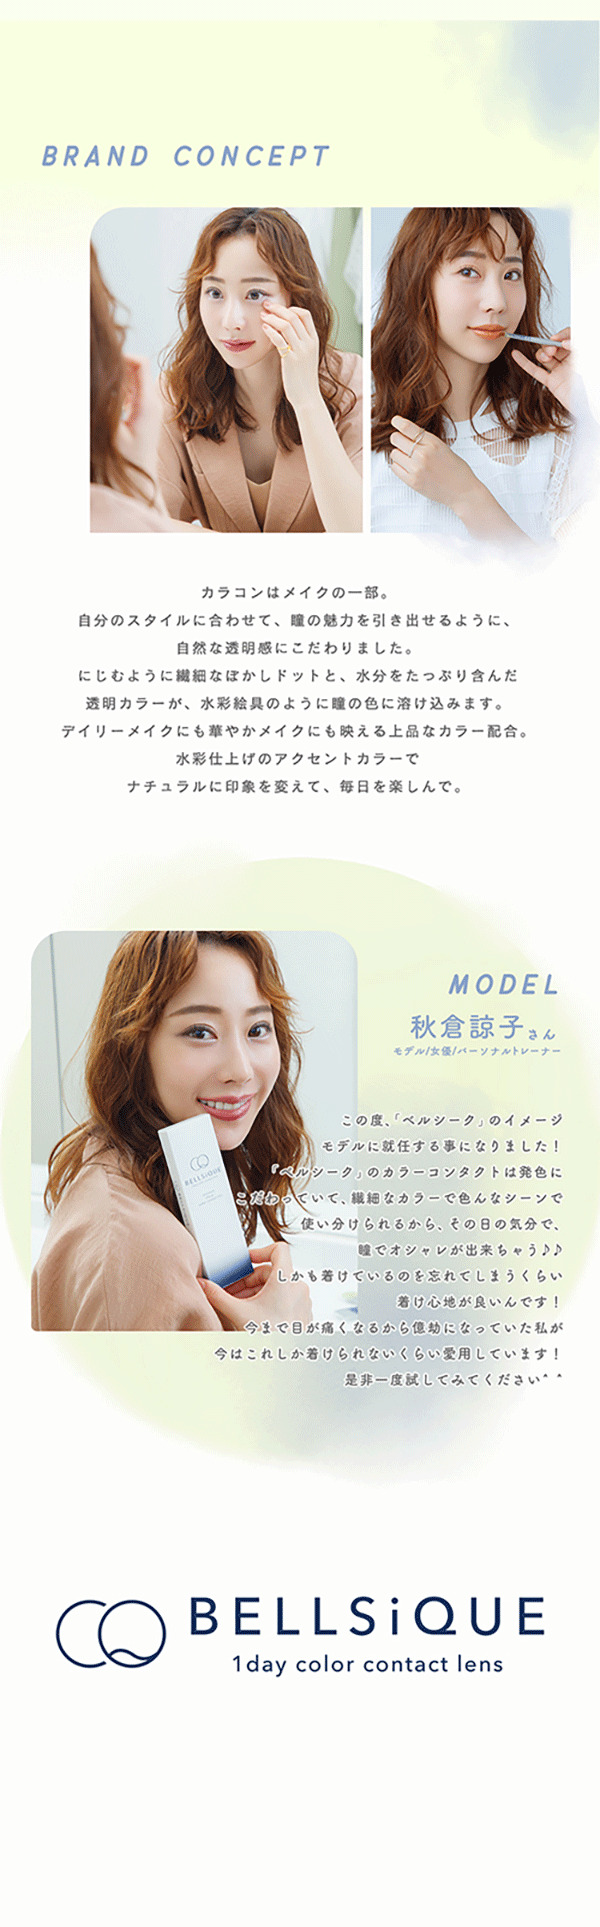 ベルシークのブランドコンセプトをイメージモデルの秋倉涼子さんが紹介する画像